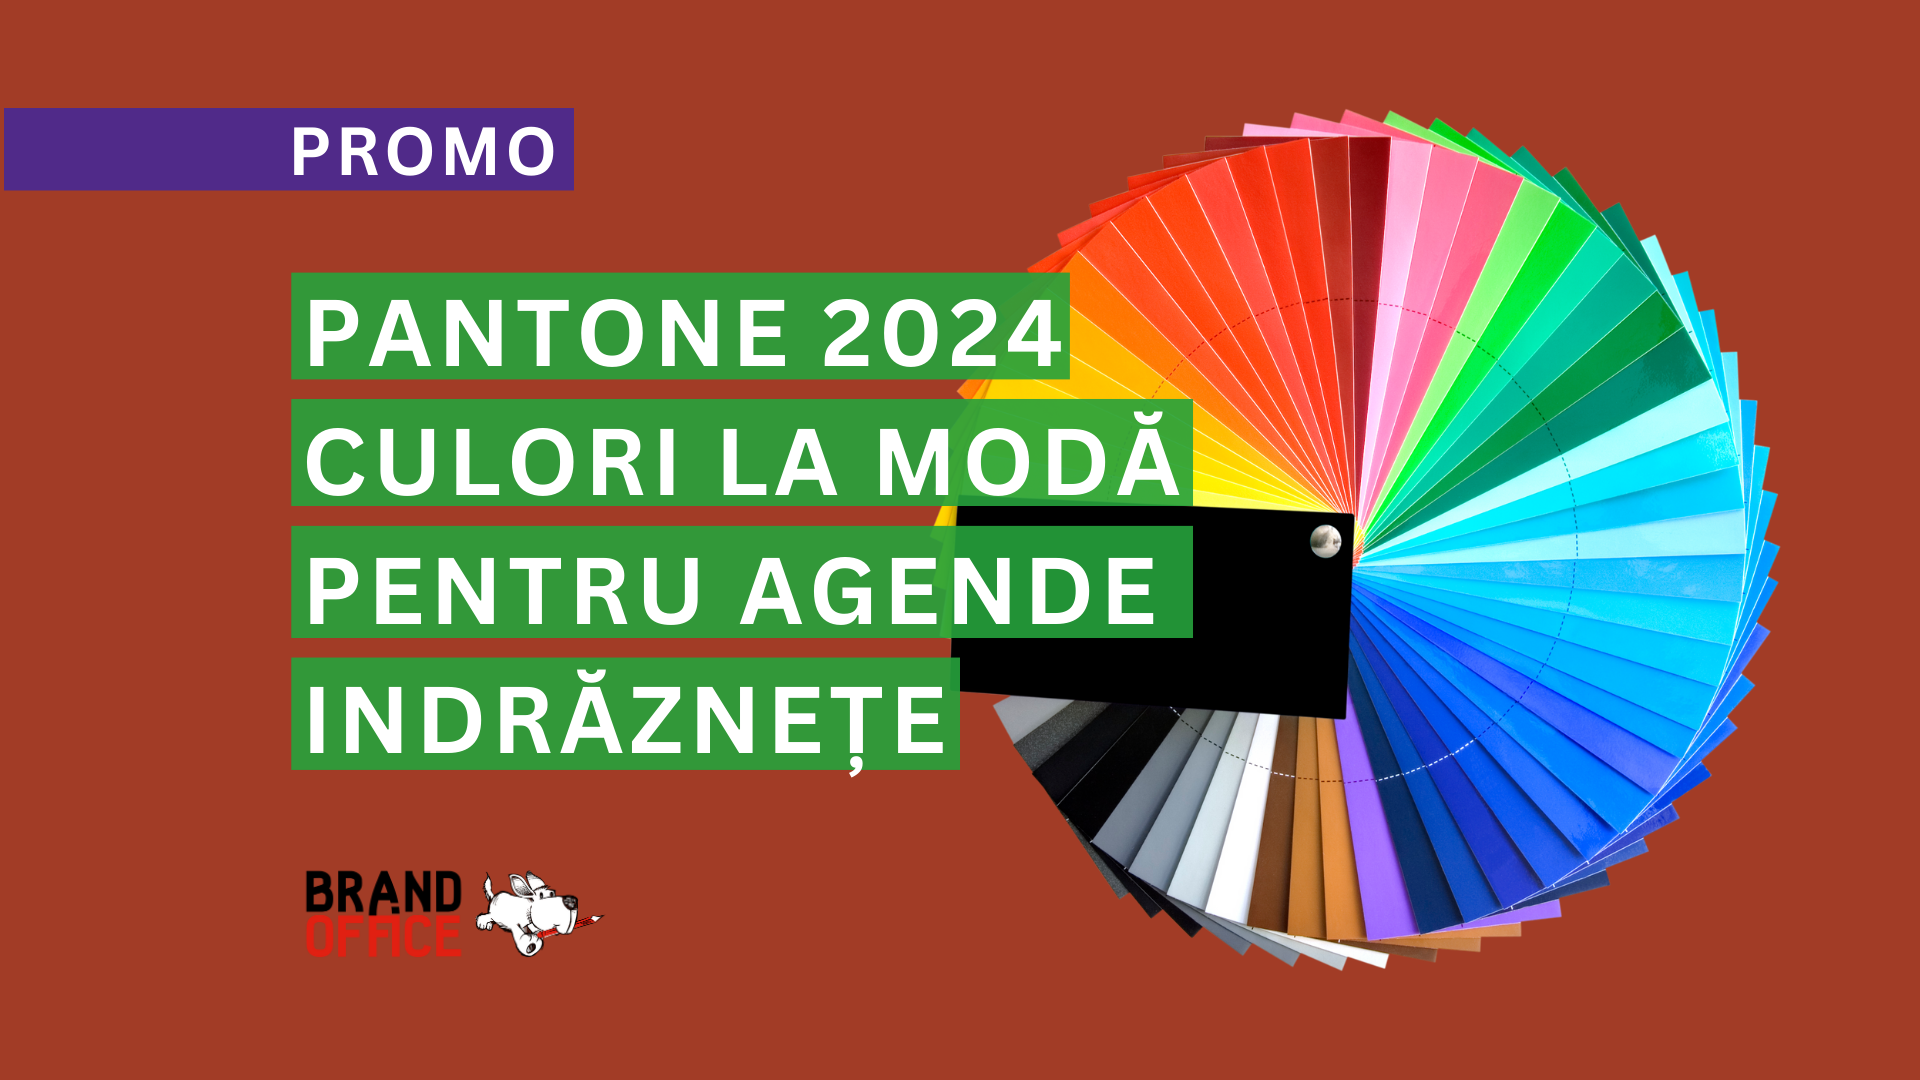 Trenduri Pantone în 2024 - Alege culori indraznete pentru agendele personalizate